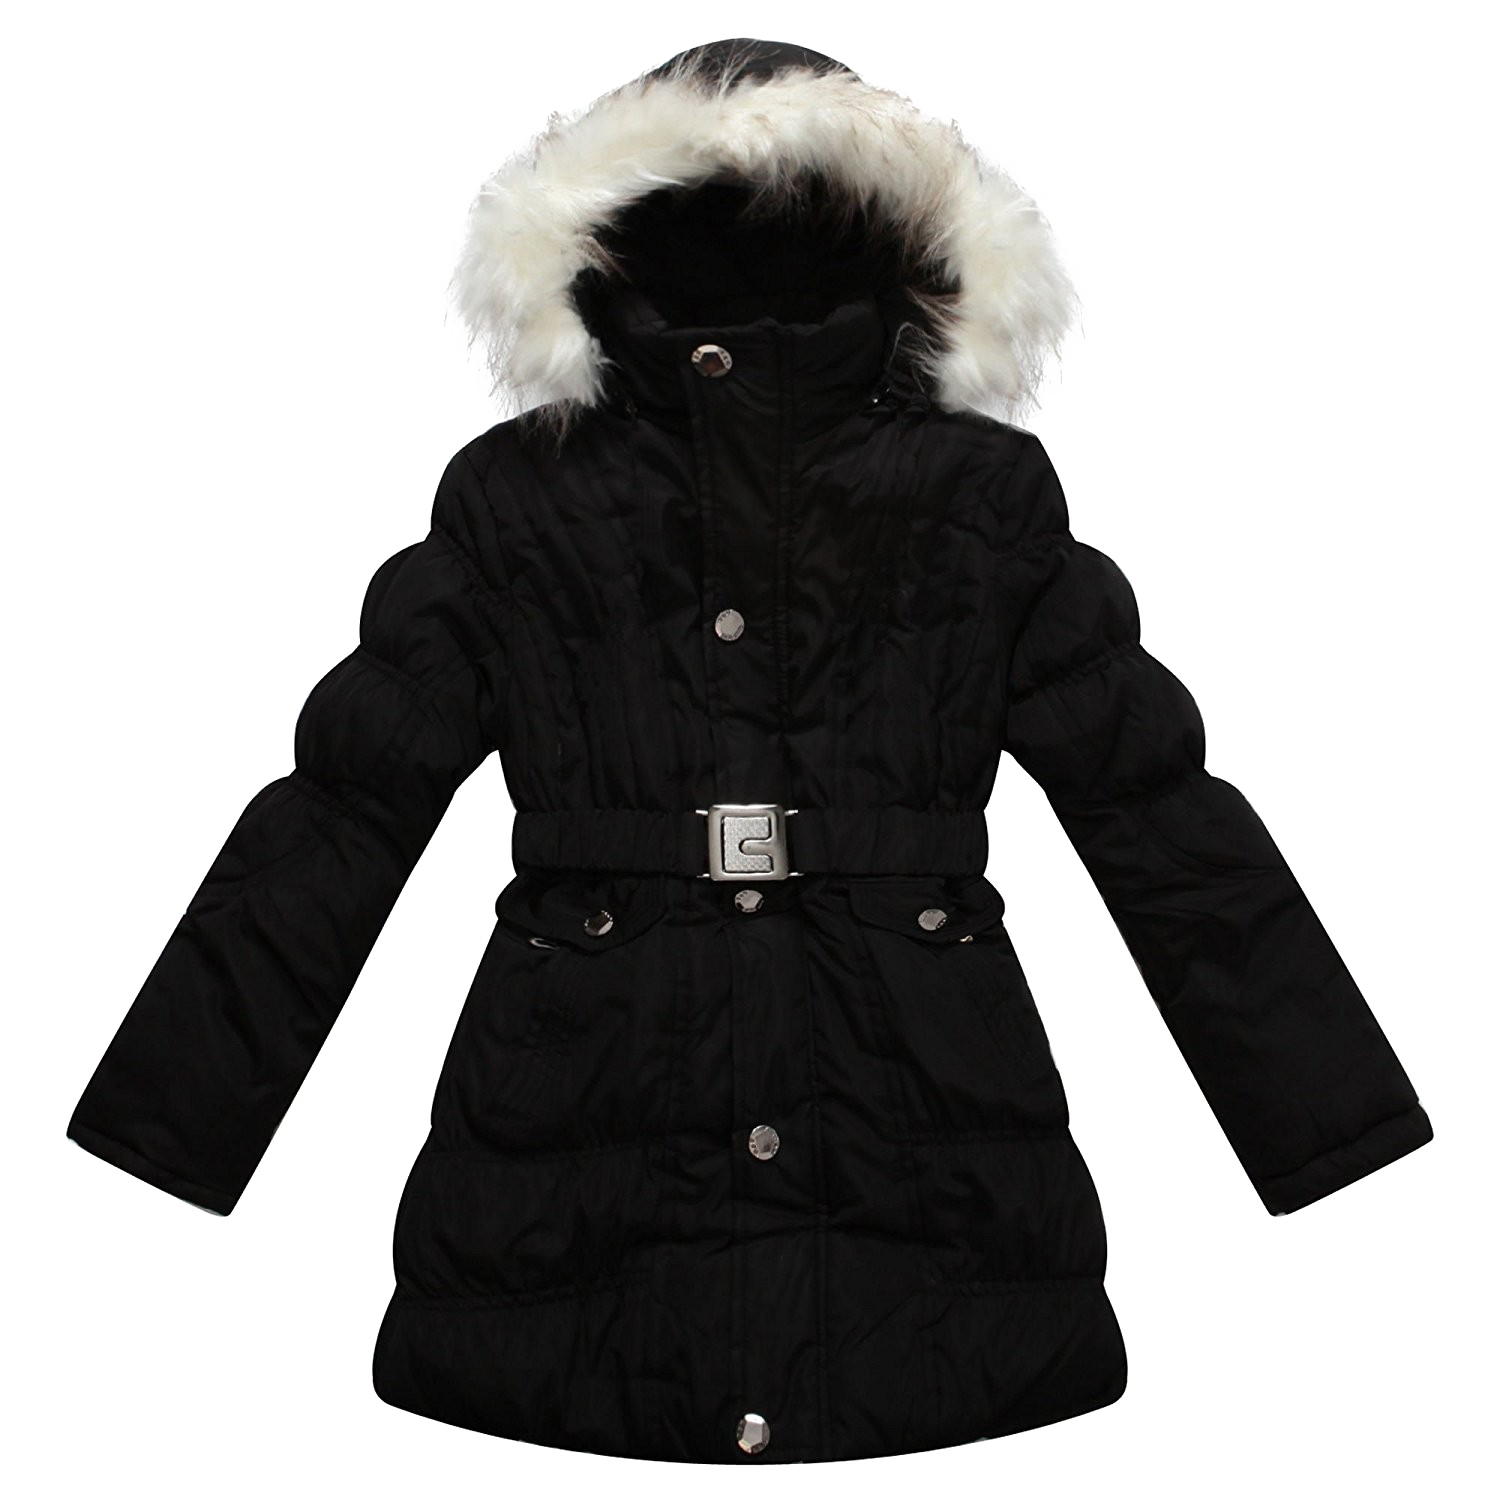 Black Winter Jacket For Women PNG Transparent Image